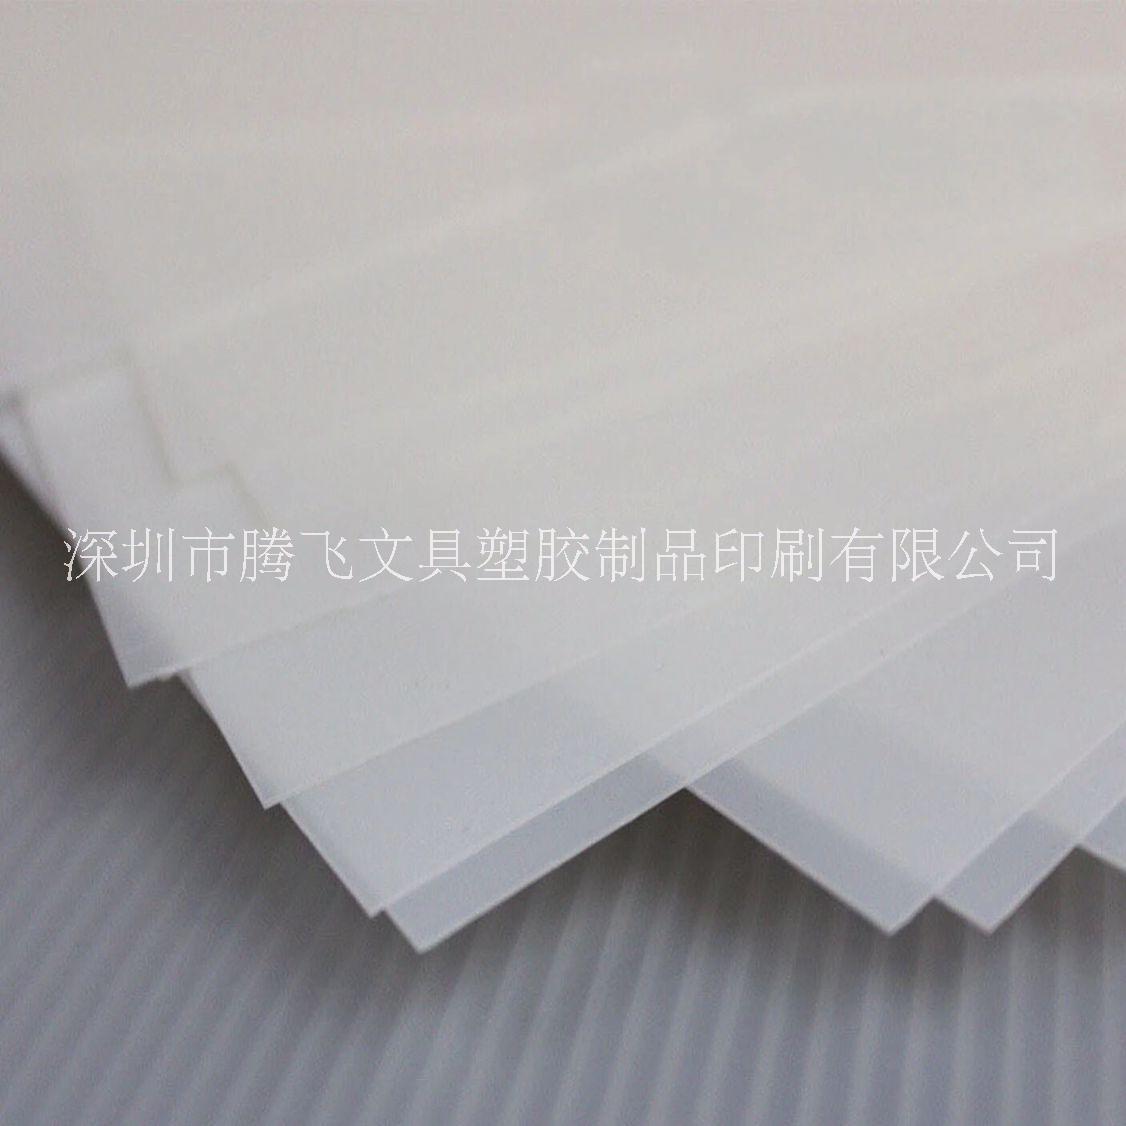 深圳市pp片材厂家供应用于包装制品|产品垫板|挂条的pp片材，pp吸塑片材，环保pp塑料片